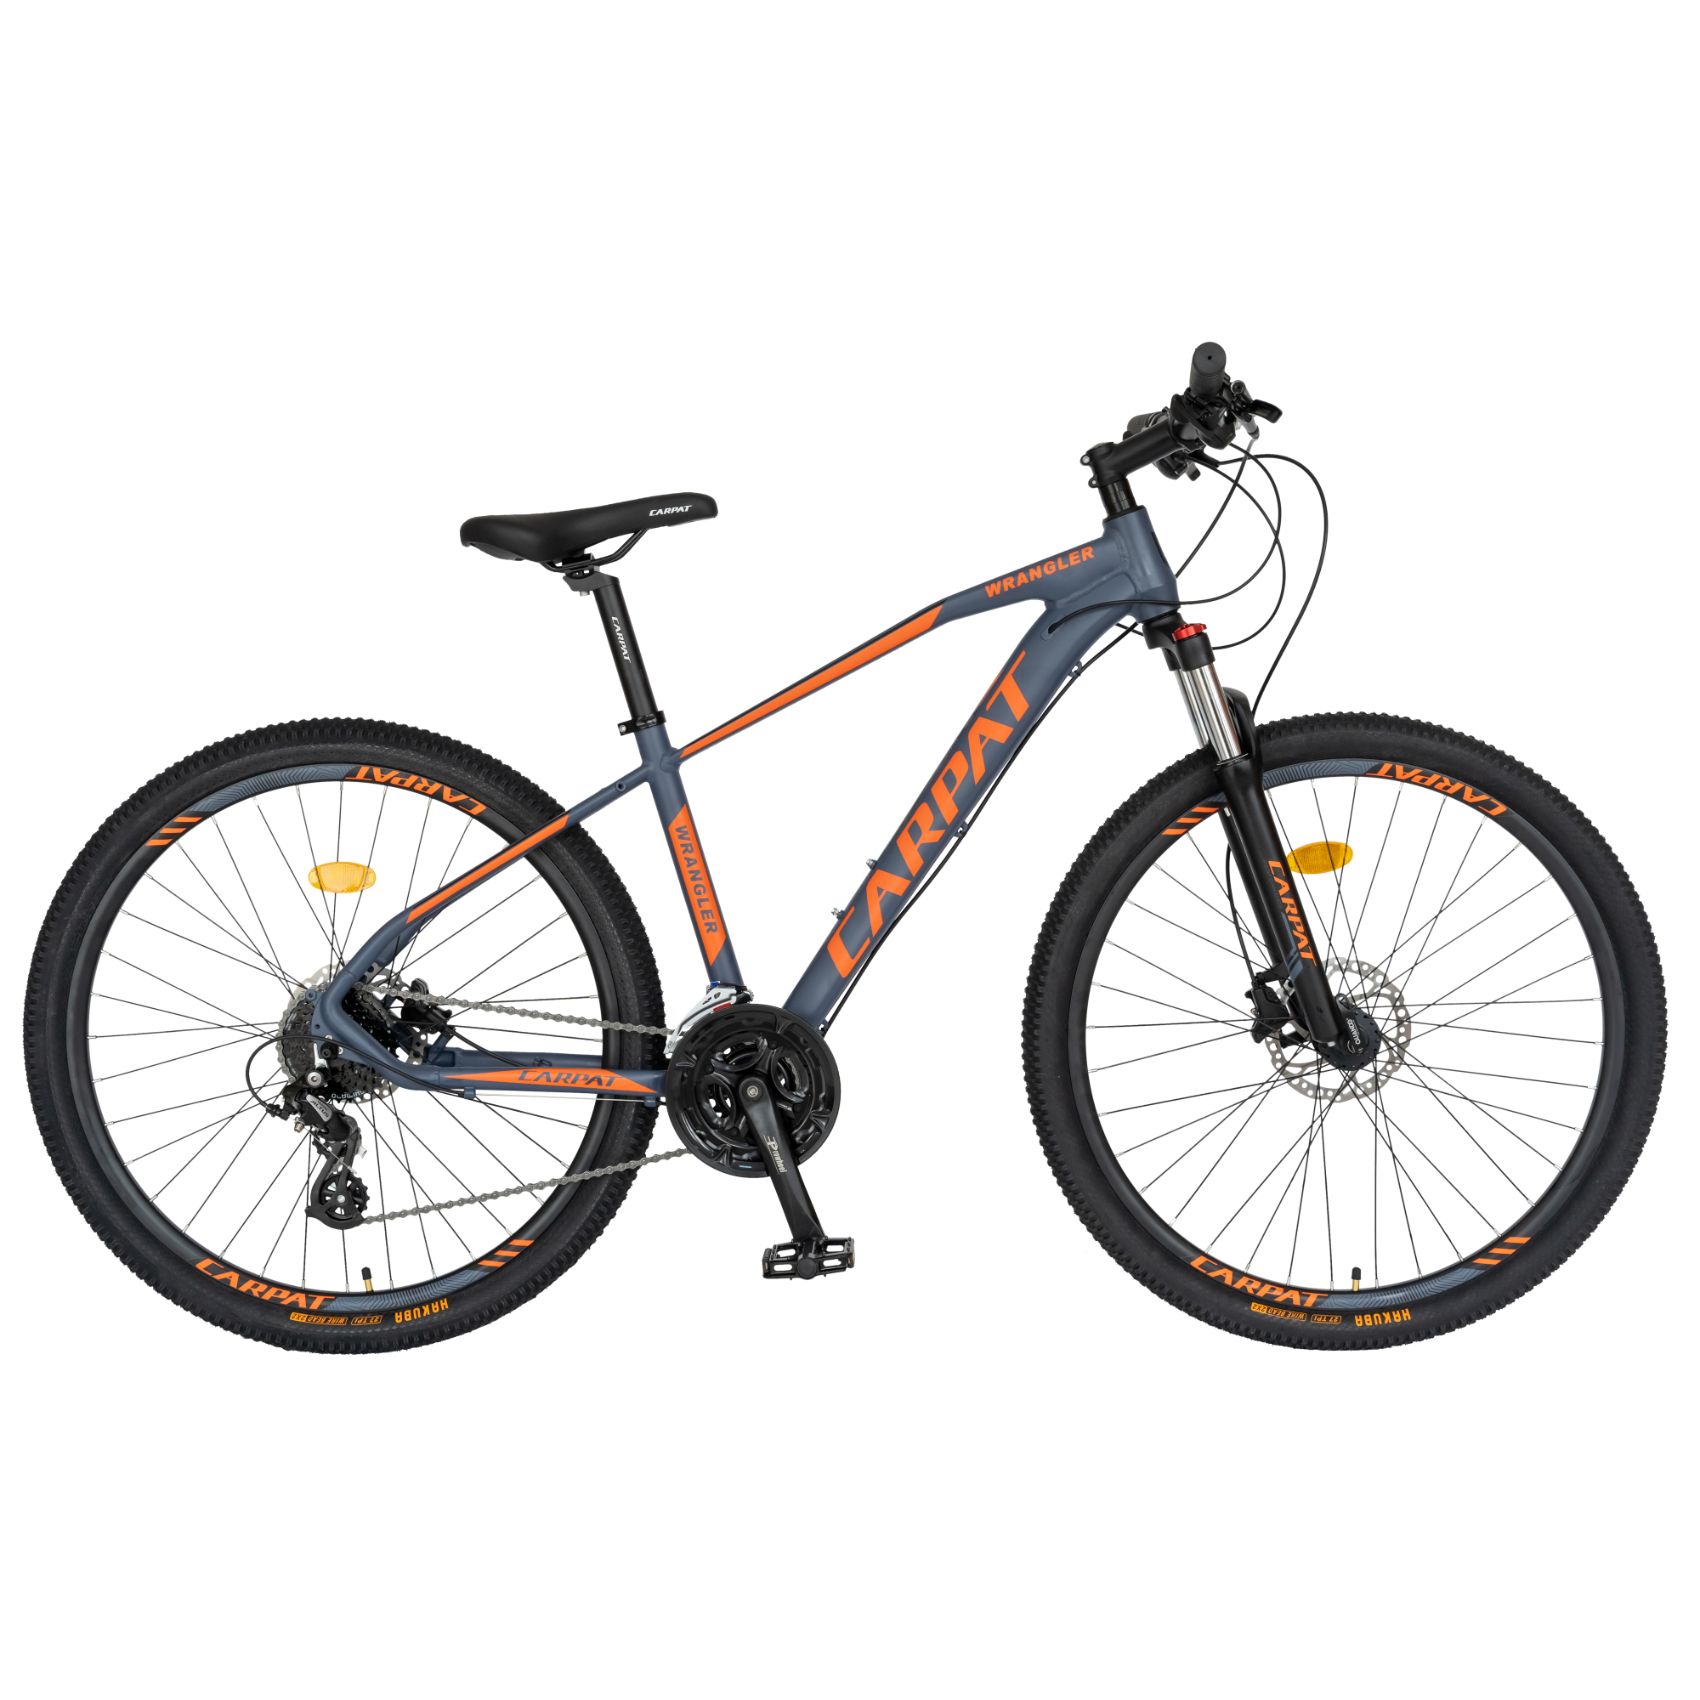 PROMO BICICLETE - Bicicleta MTB-HT Carpat Wrangler C2759AH 27.5", Negru/Portocaliu, https:carpatsport.ro